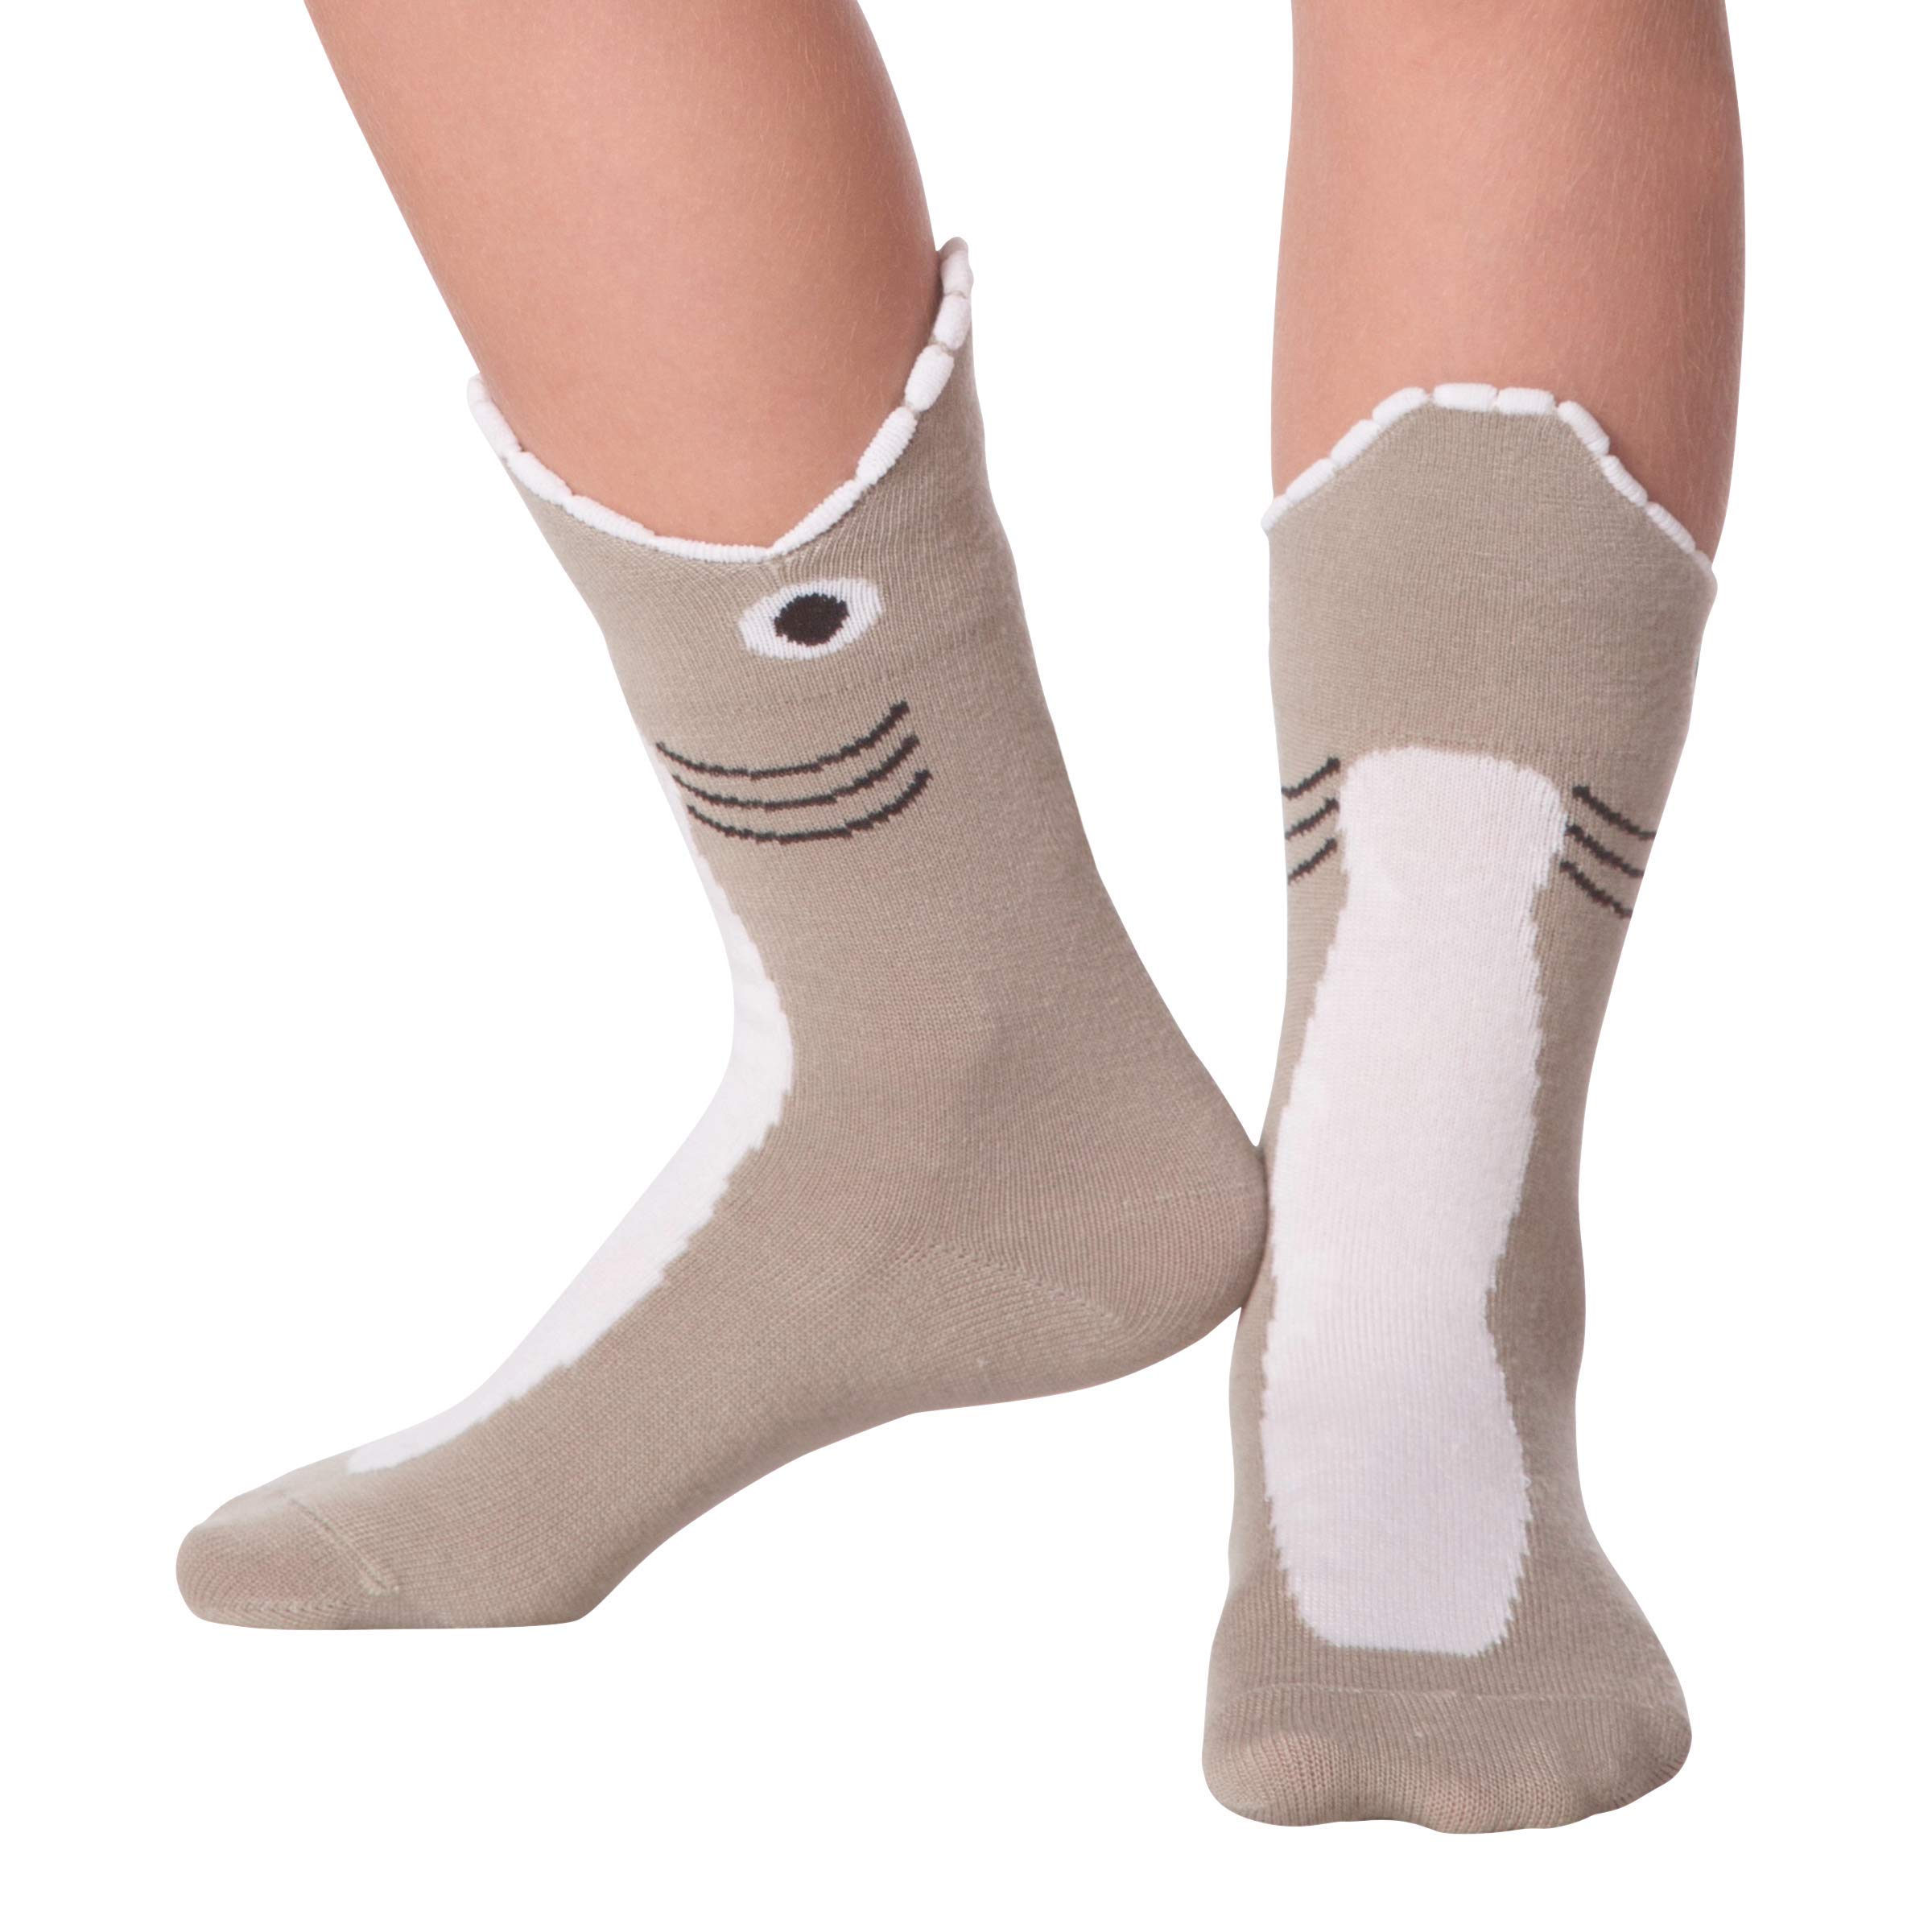 K. Bell Socks Kids' Fun Novelty Crew Socks-Unisex 1 Pair Pack